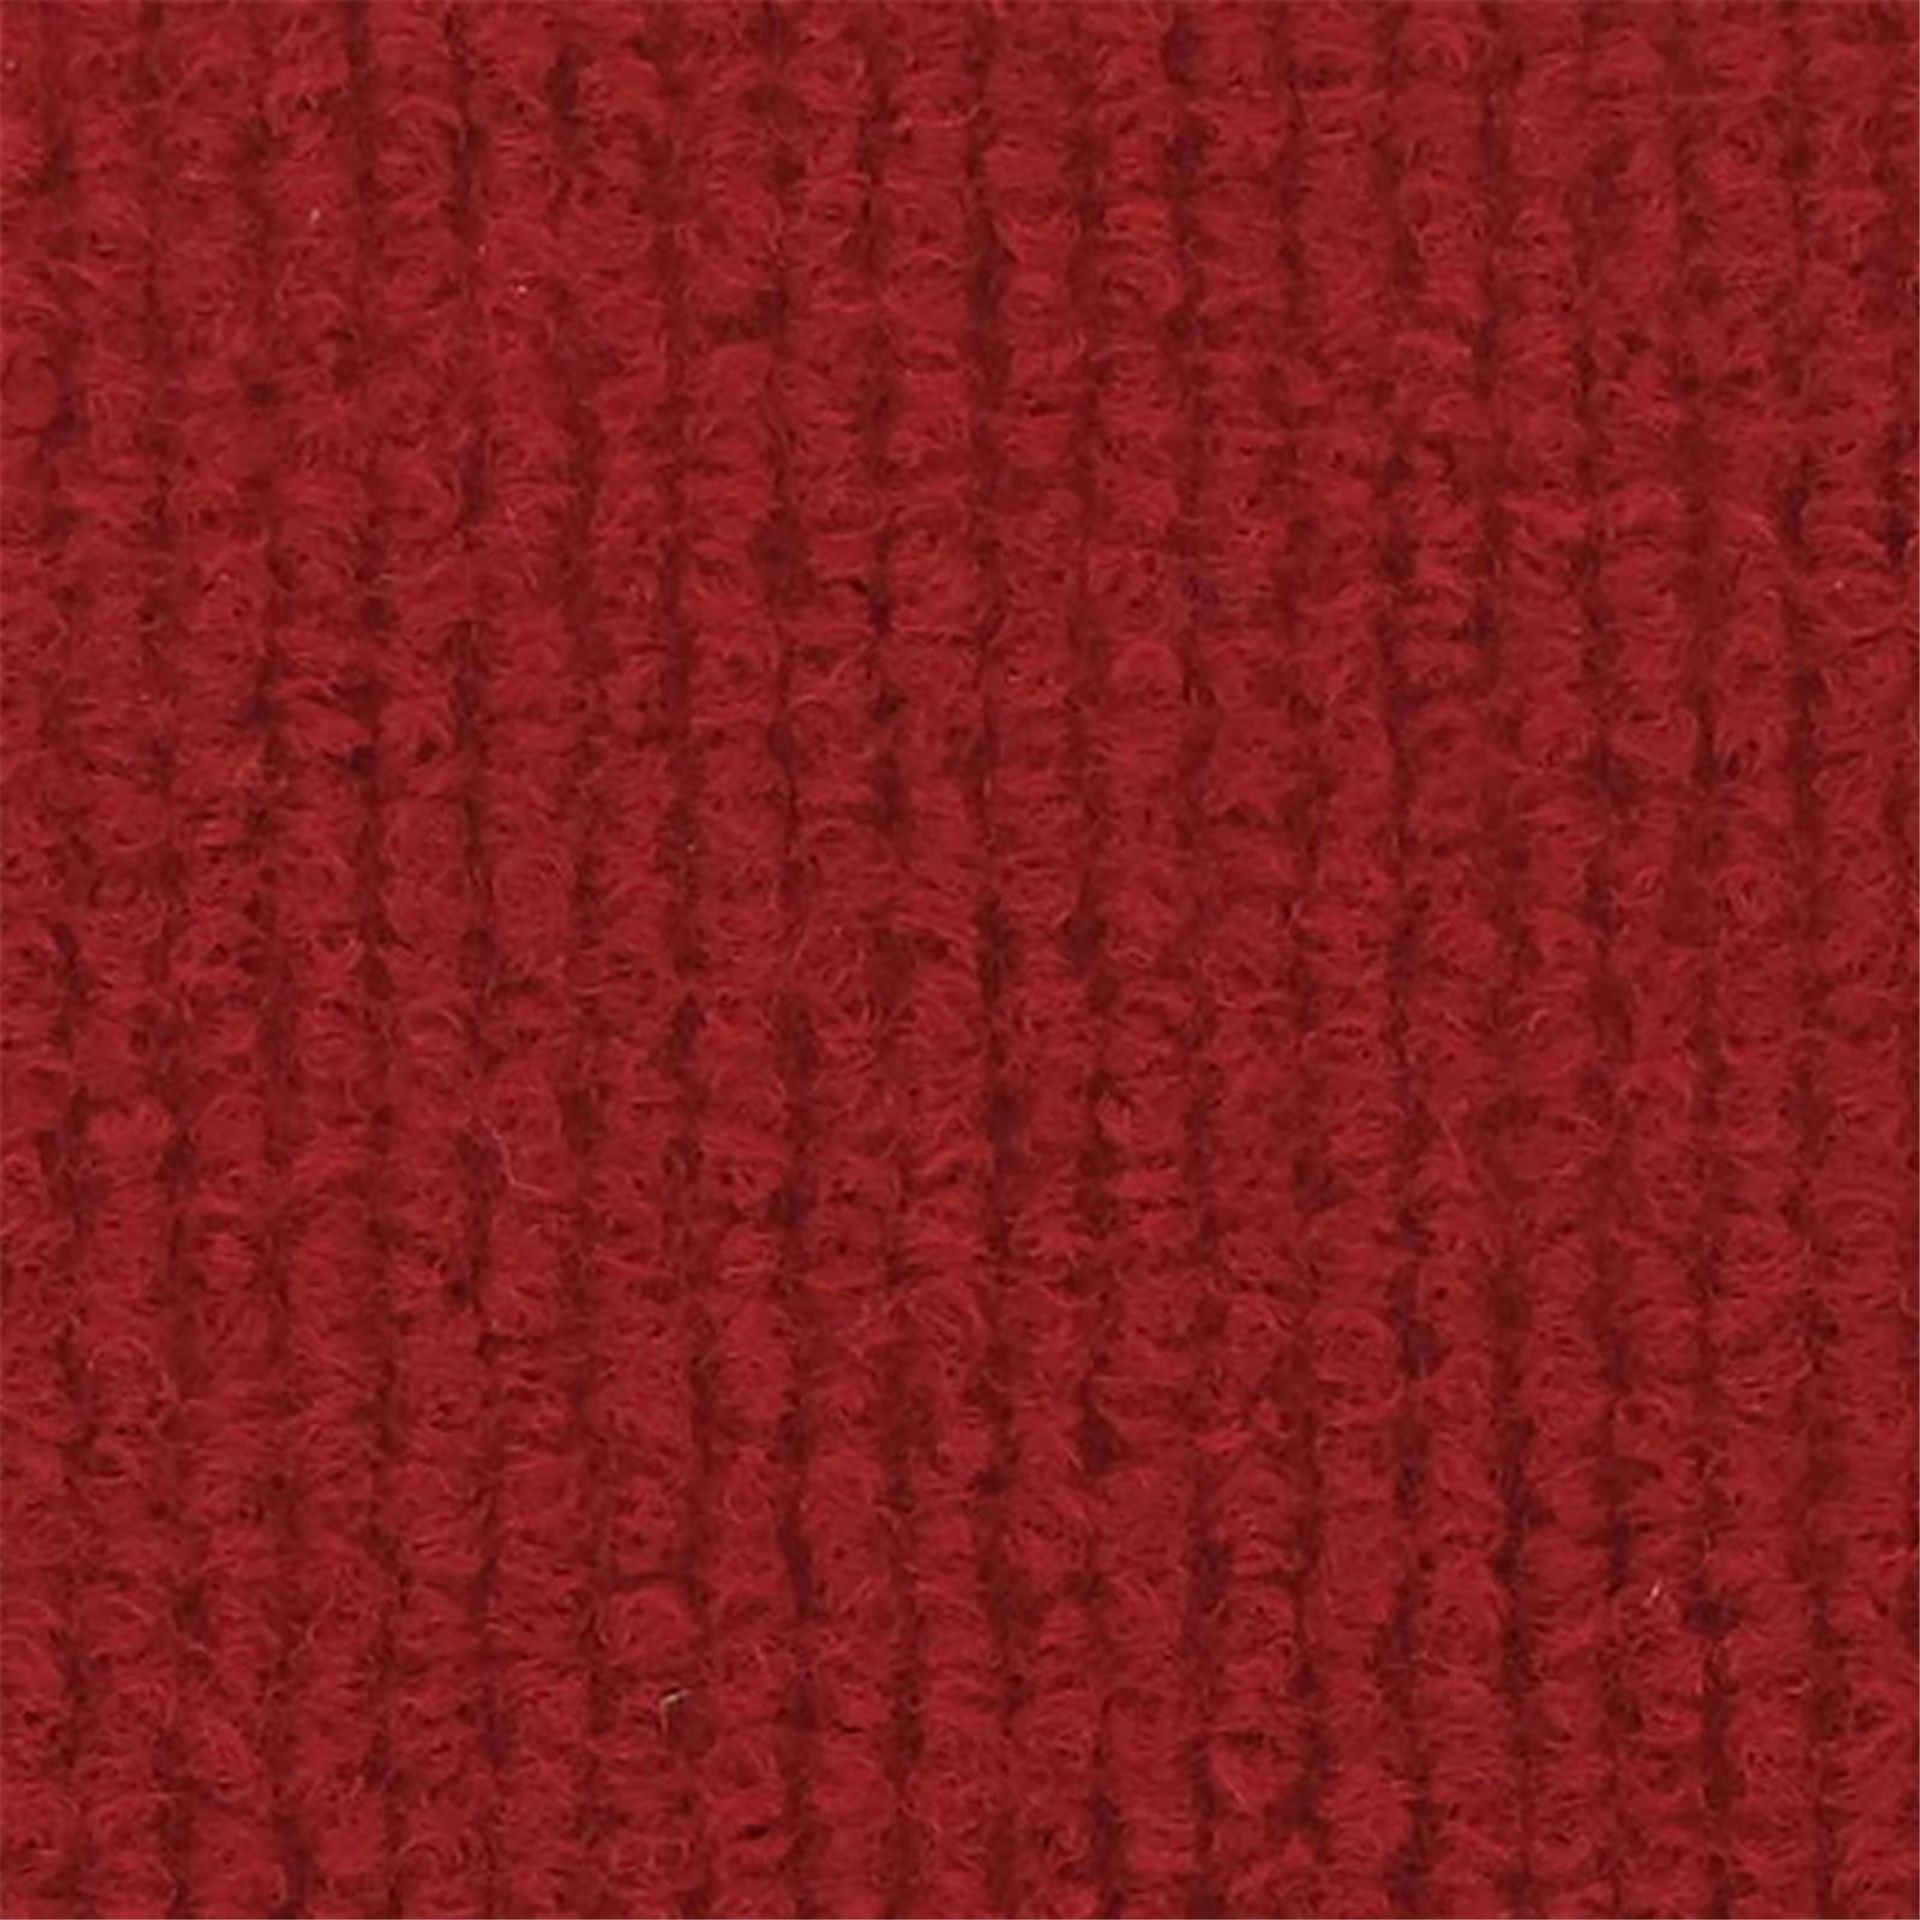 Messeboden Rips-Nadelvlies EXPOLINE Richelieu Red 9522 100qm ohne Schutzfolie - Rollenbreite 200 cm